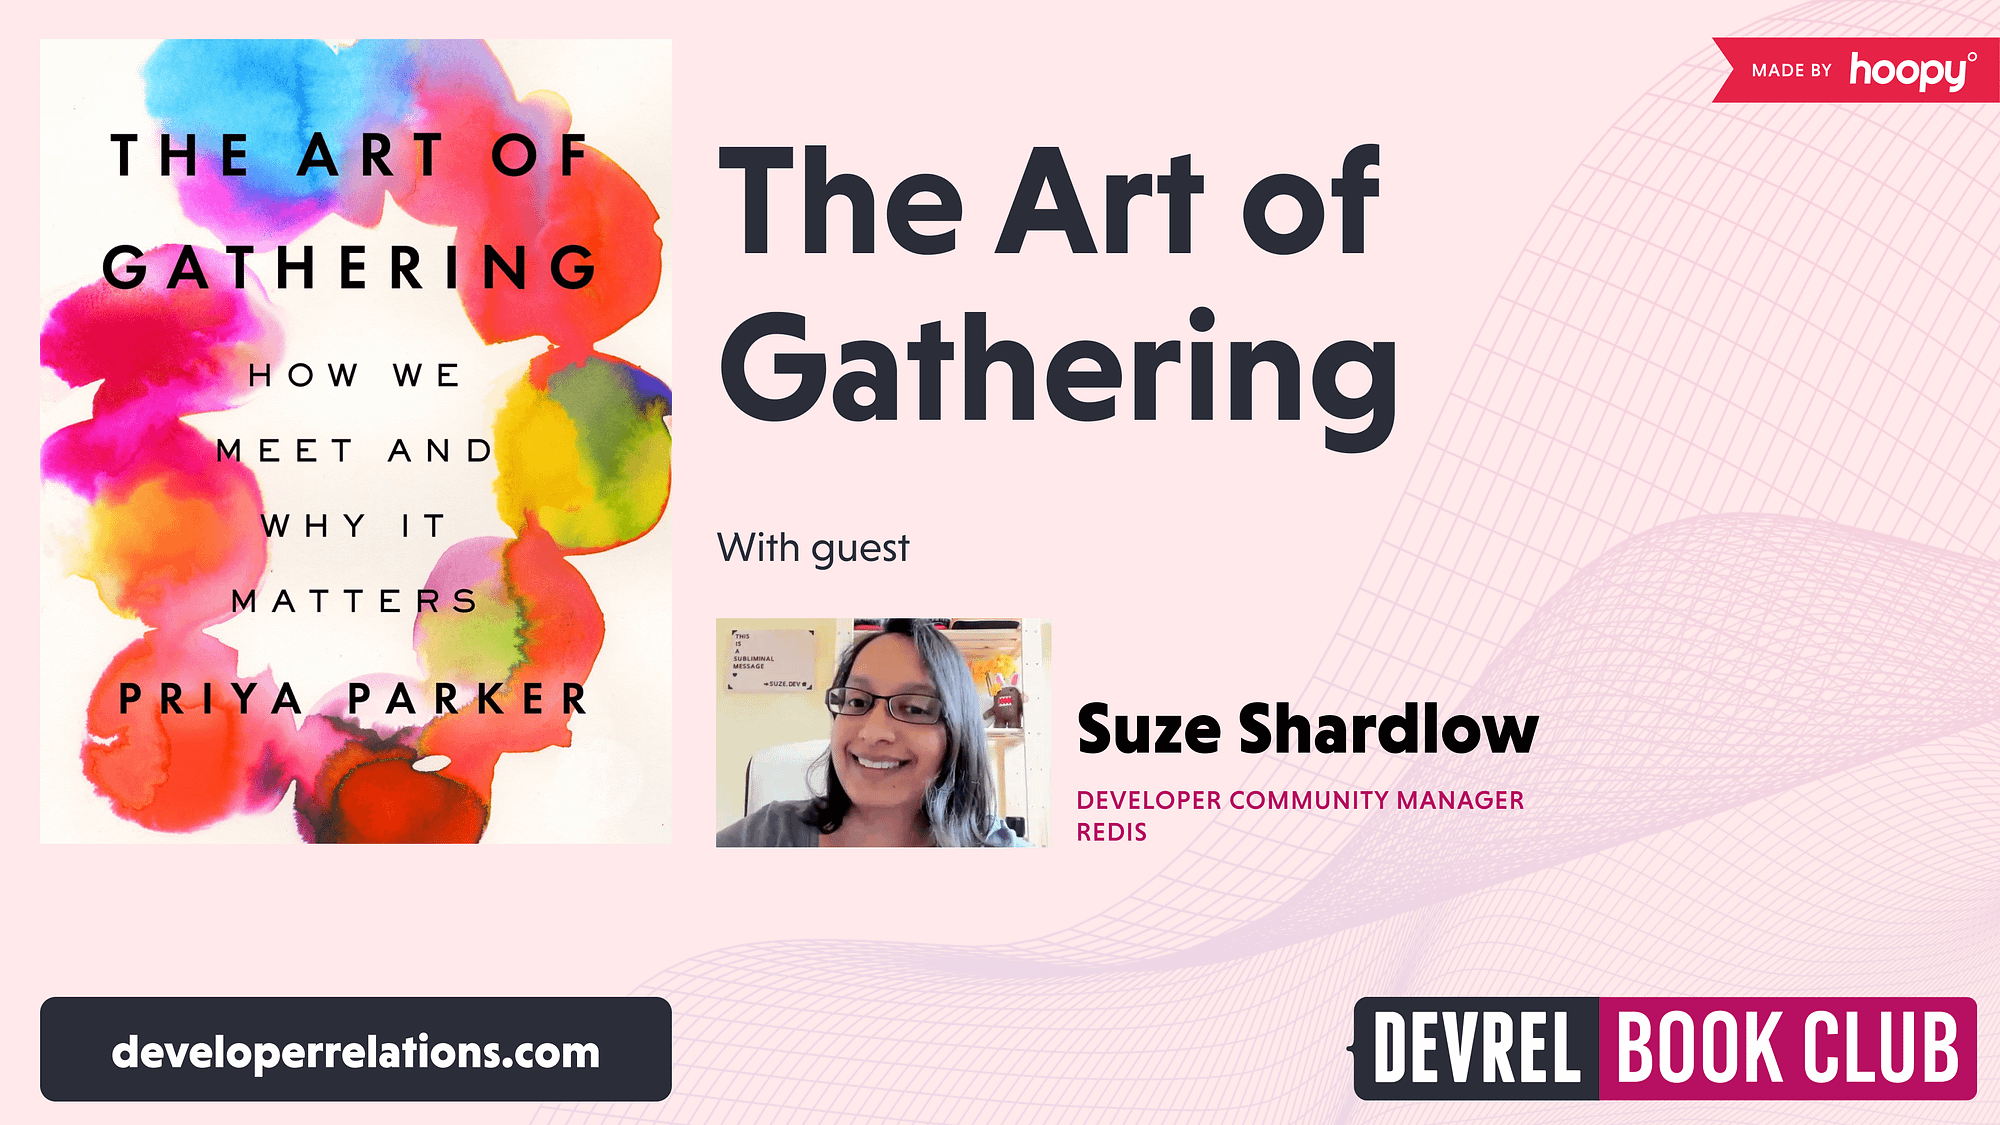 Suze Shardlow, The Art of Gathering